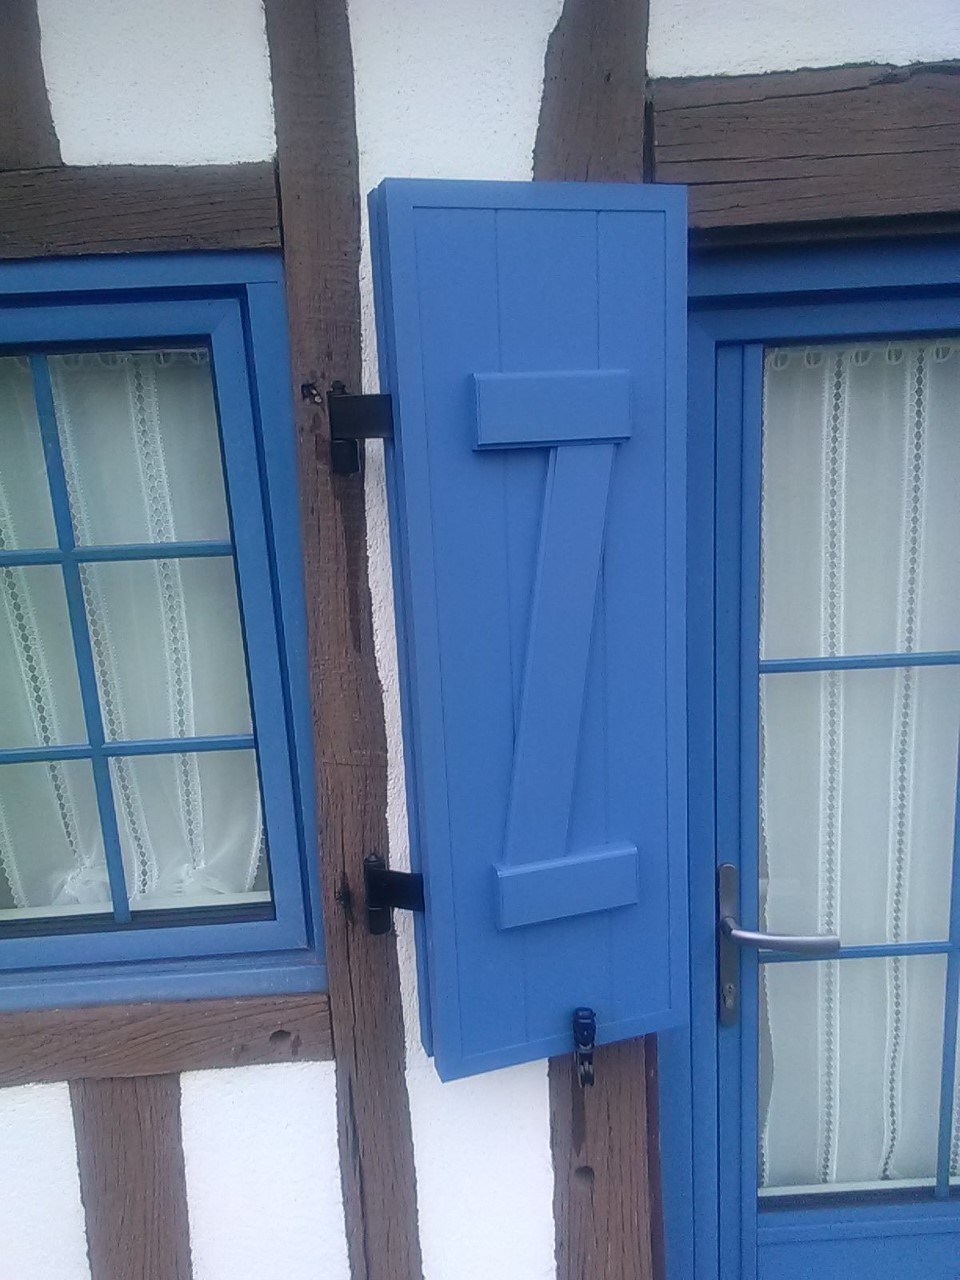 Fenêtres bleues - Posées par L'Atelier Muller au Havre